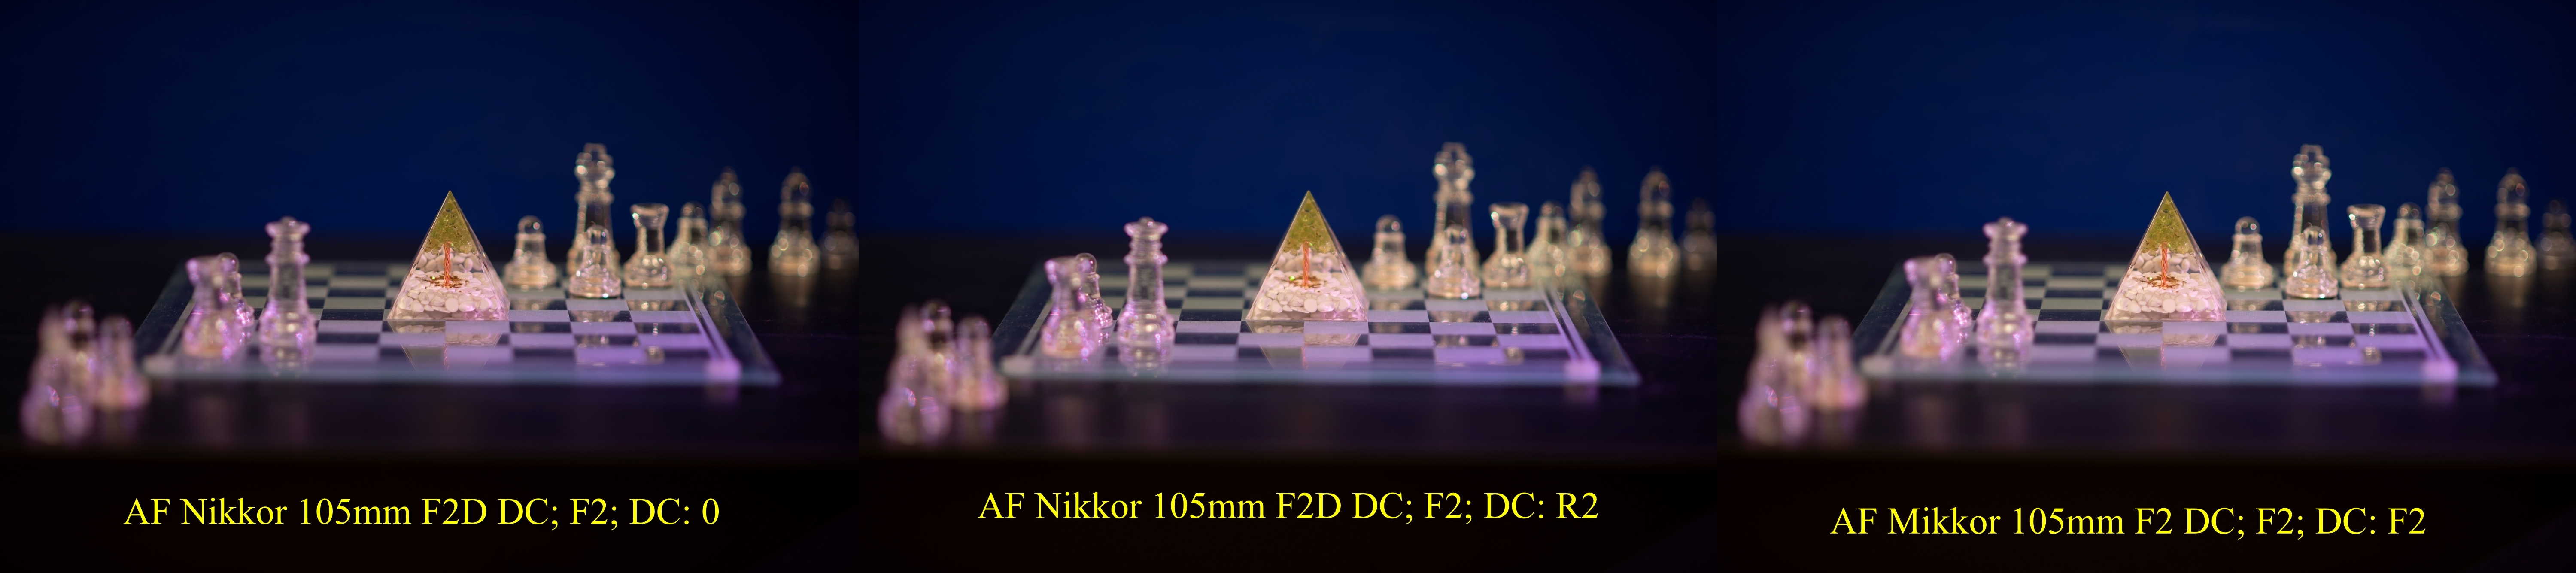 AF Nikkor 105mm F2D DC Pyramid